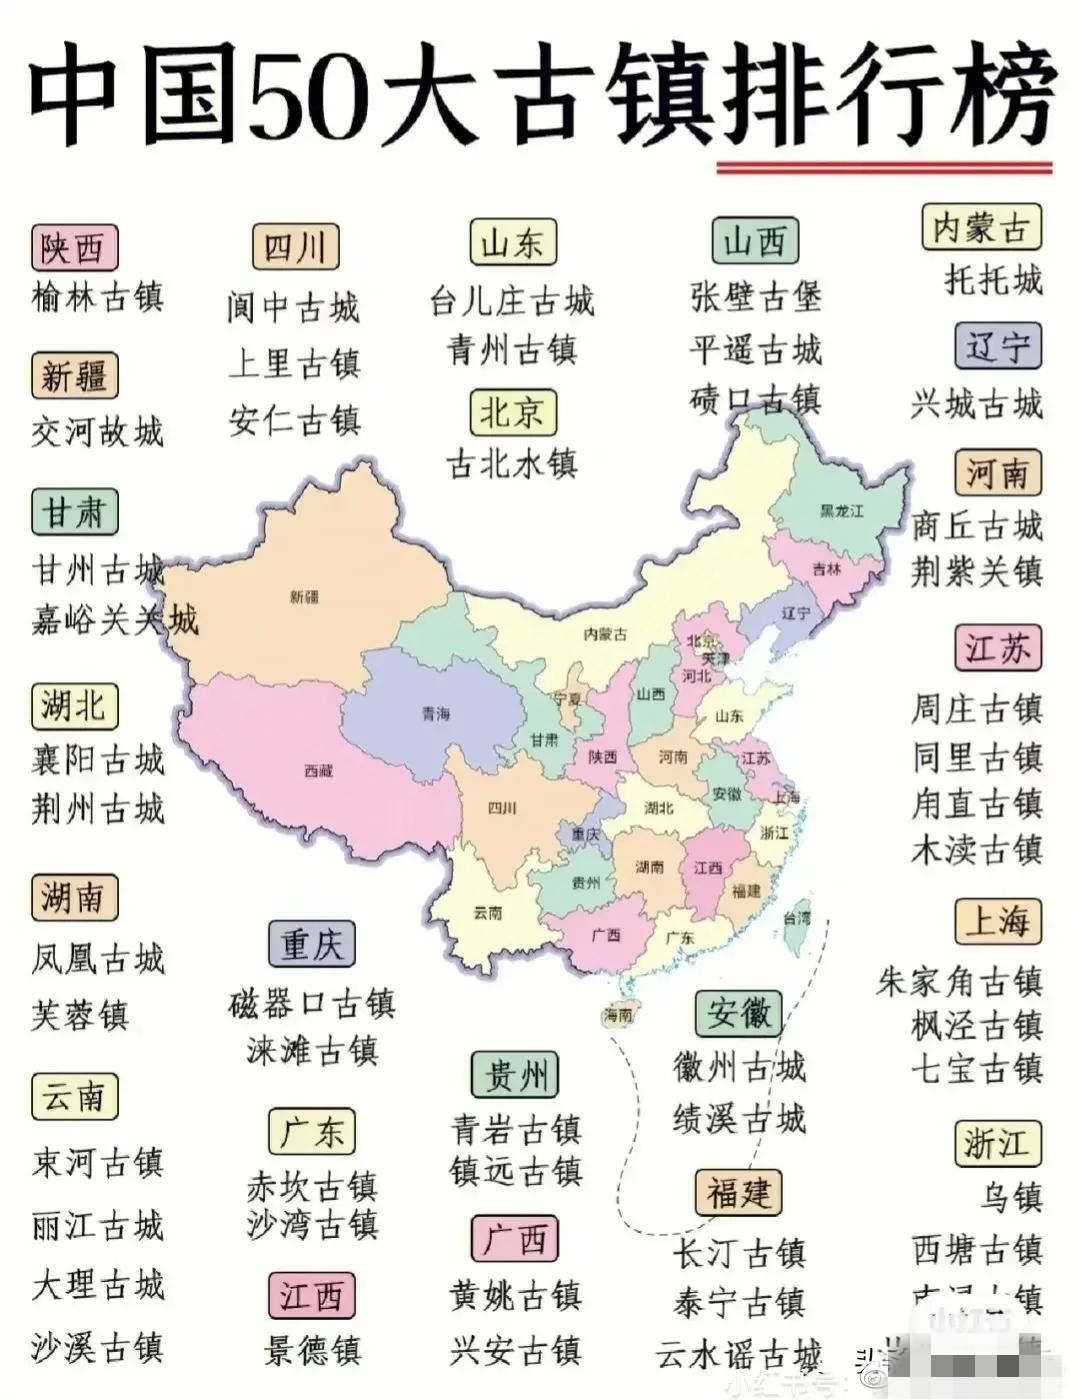 “中国50大古镇”